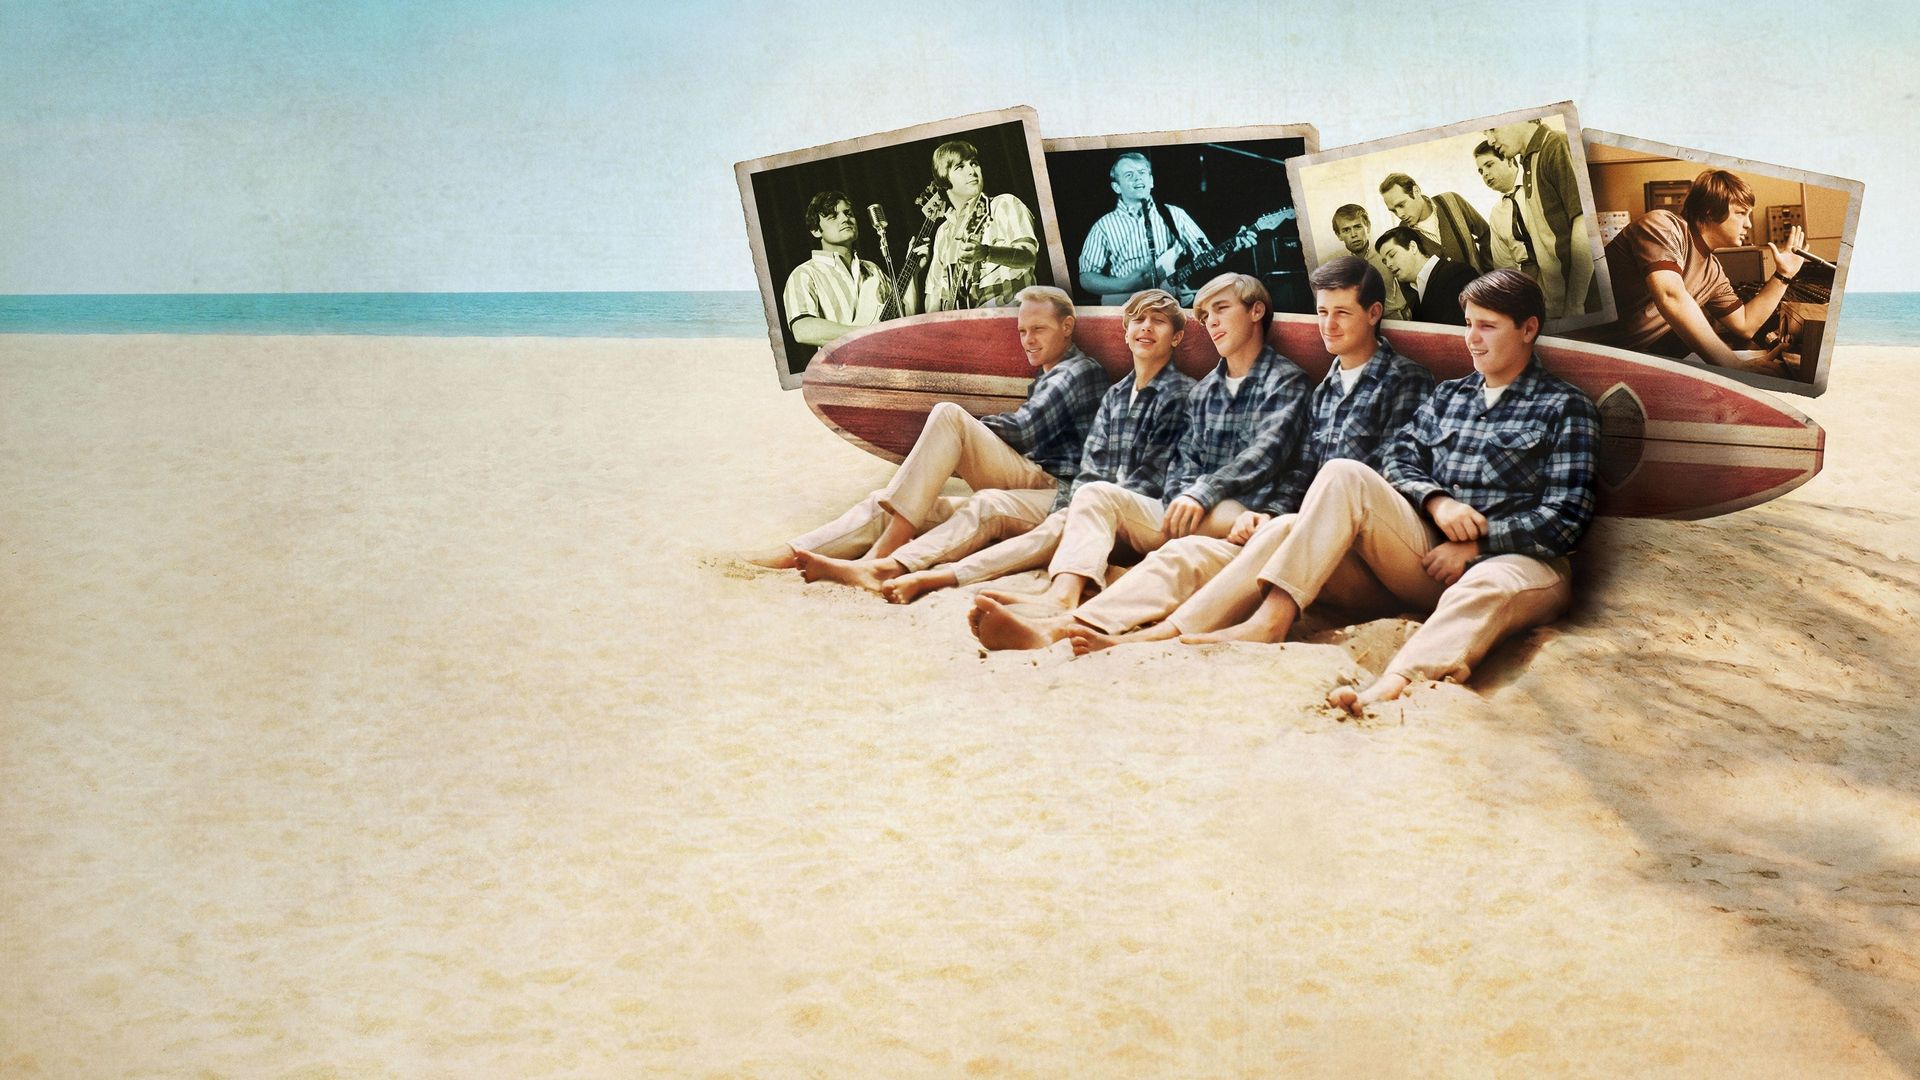 The Beach Boys background